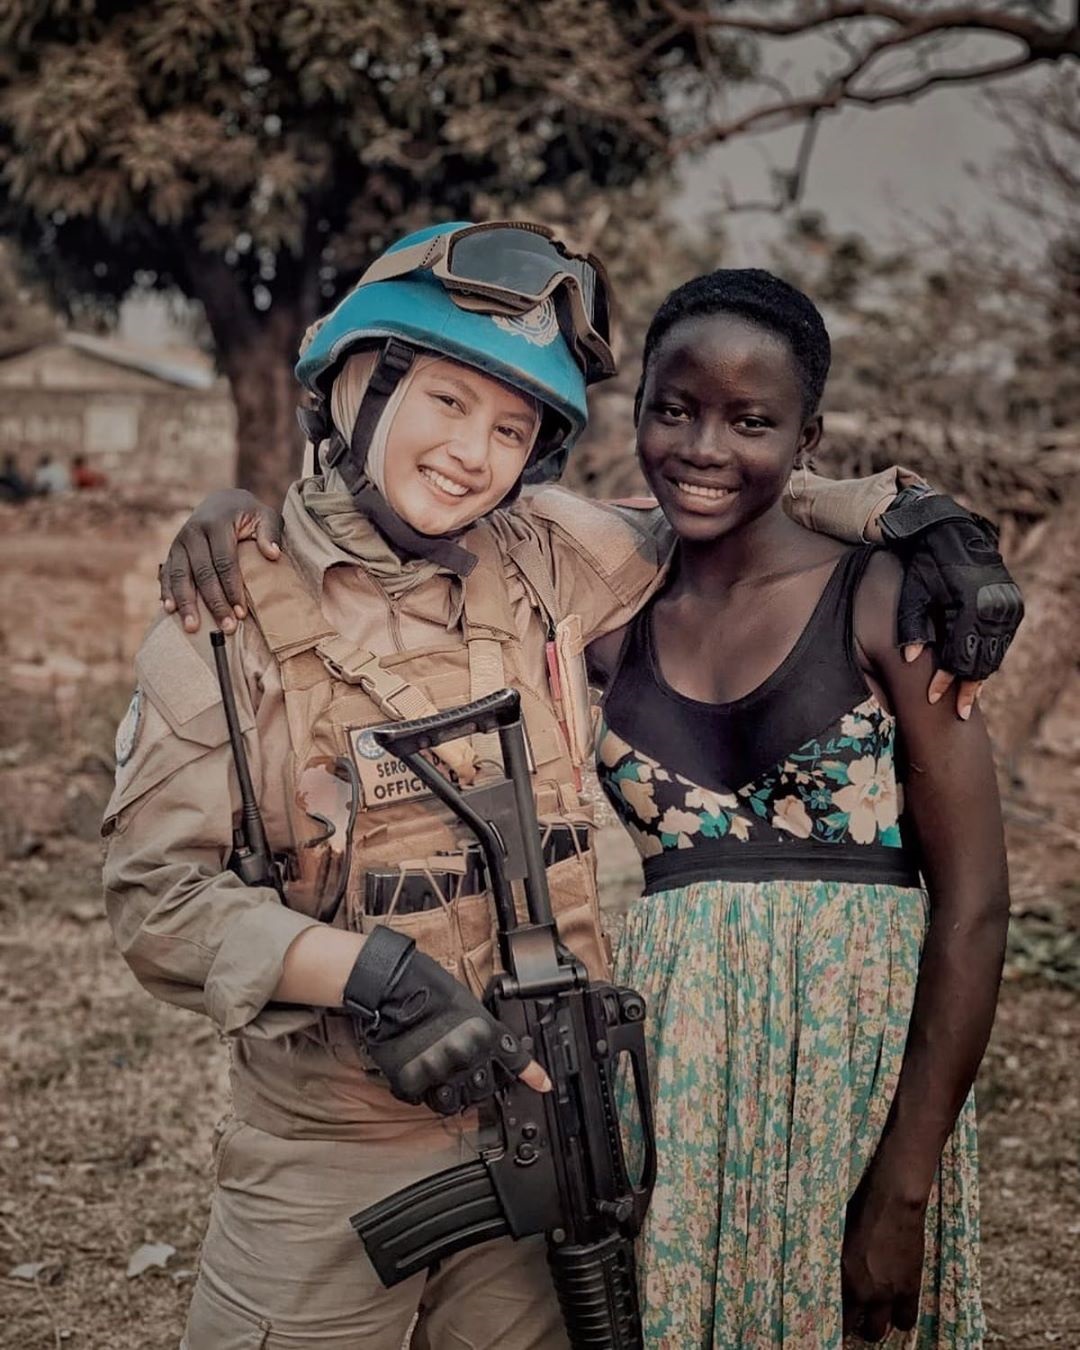 10 ภาพที่น่าลุ่มหลง ตำรวจสาวสวยรับราชการในแอฟริกา